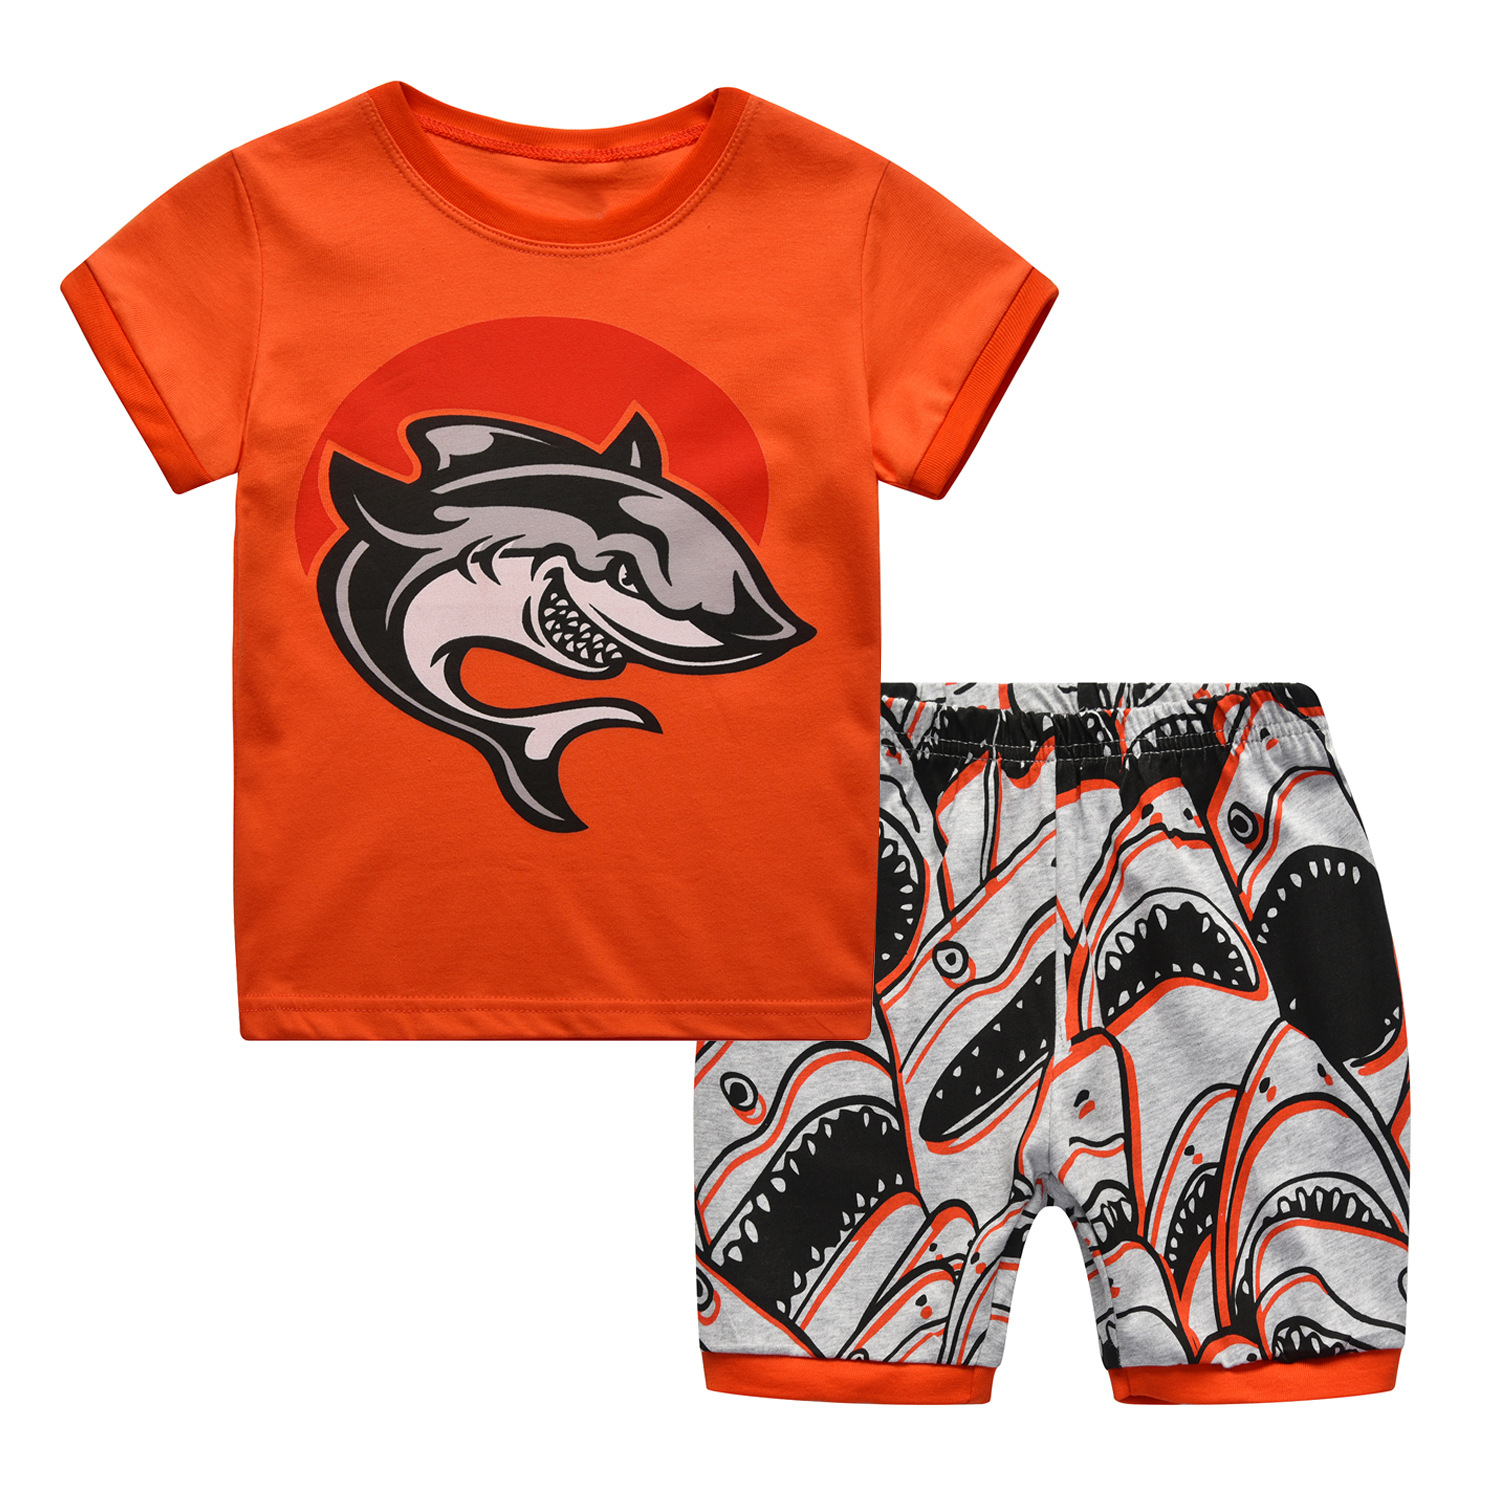 欧美亚马逊ebay跨境爆款鲨鱼儿童babycop卡布皮家居服两件套装